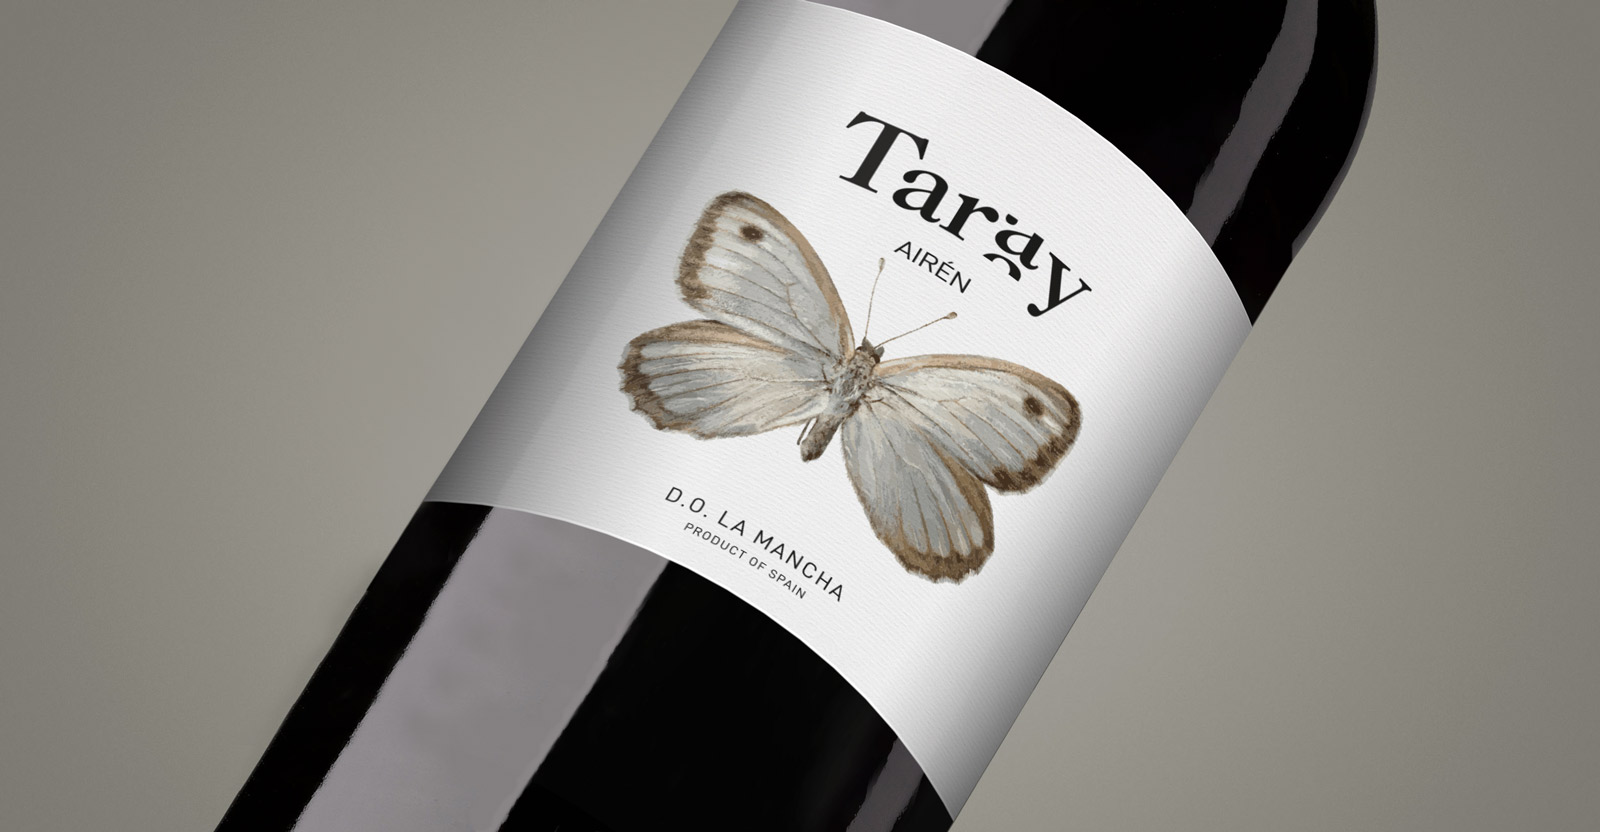 Diseño gráfico y creativo de etiquetas y packaging de vino para Bodegas Taray